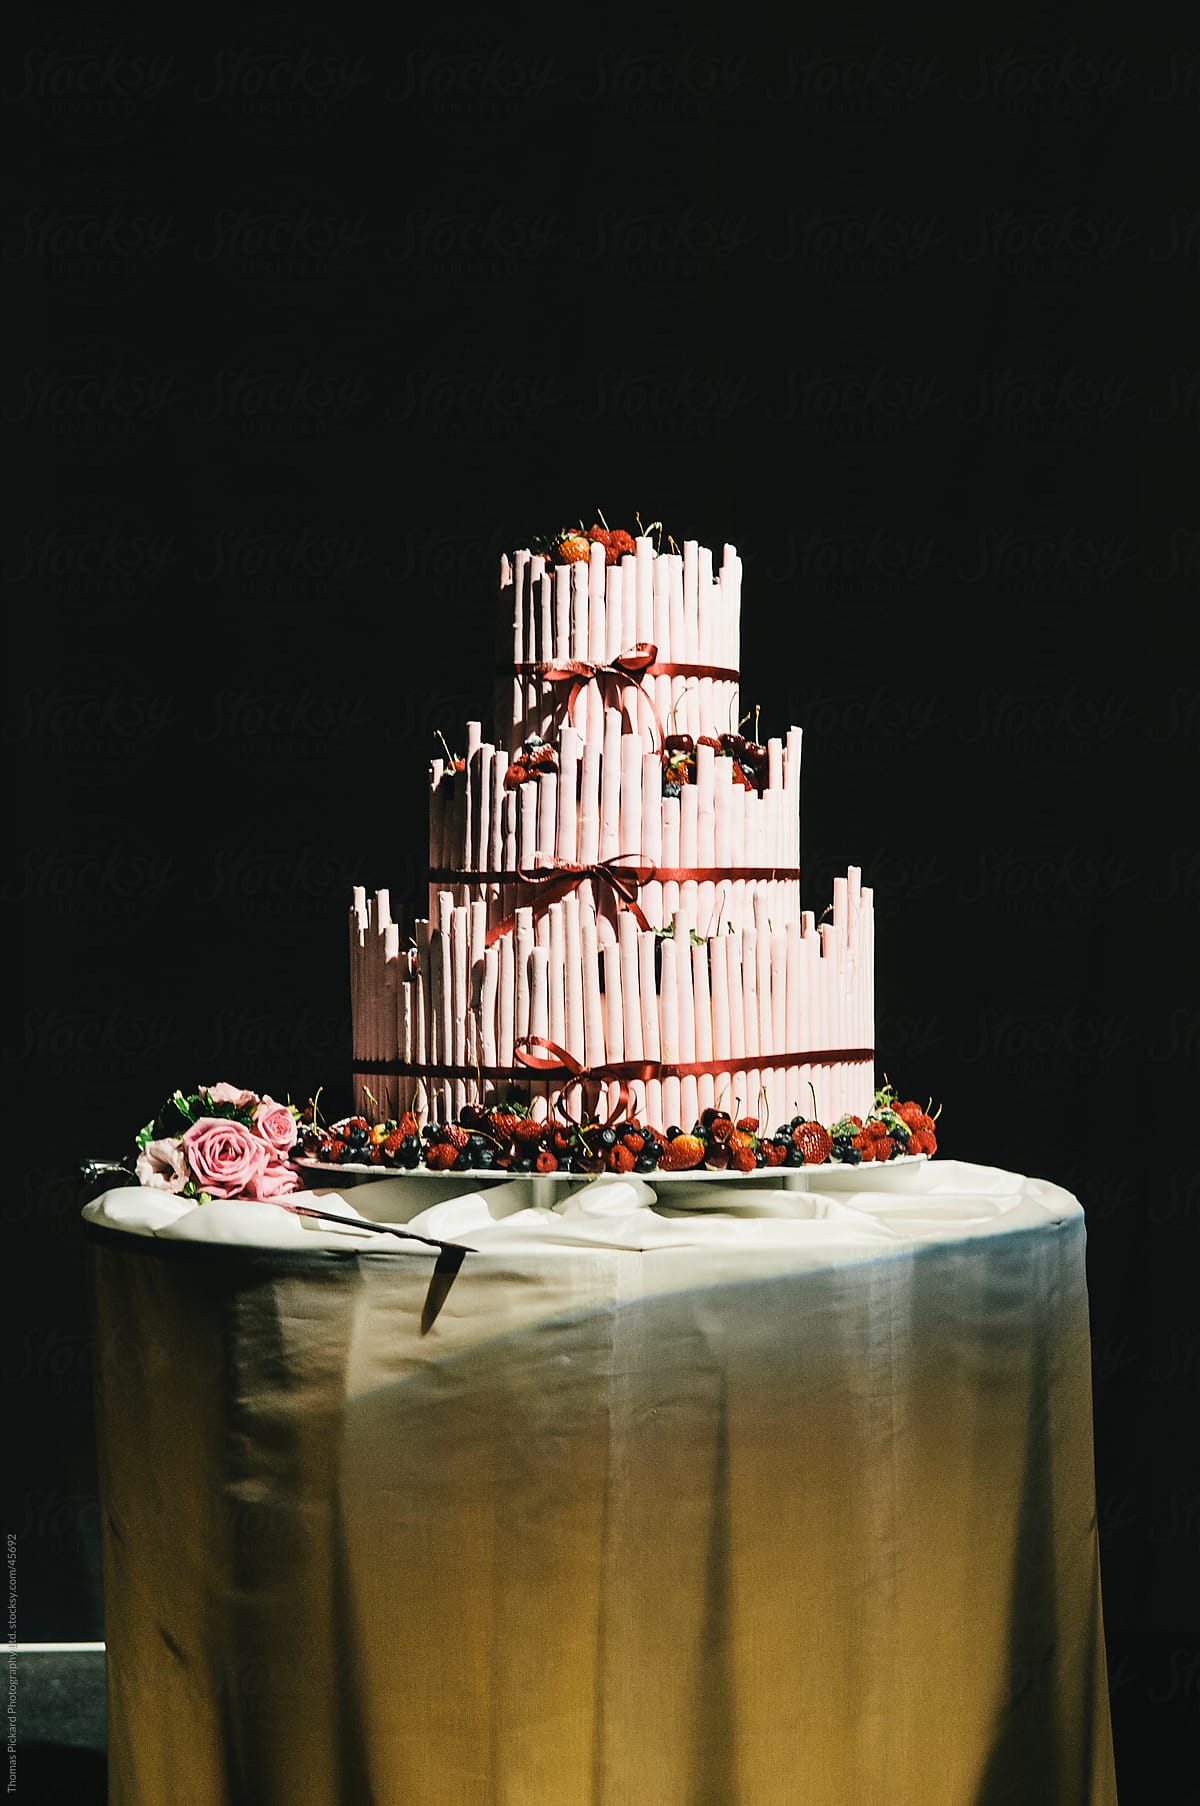 Wedding cake at night.